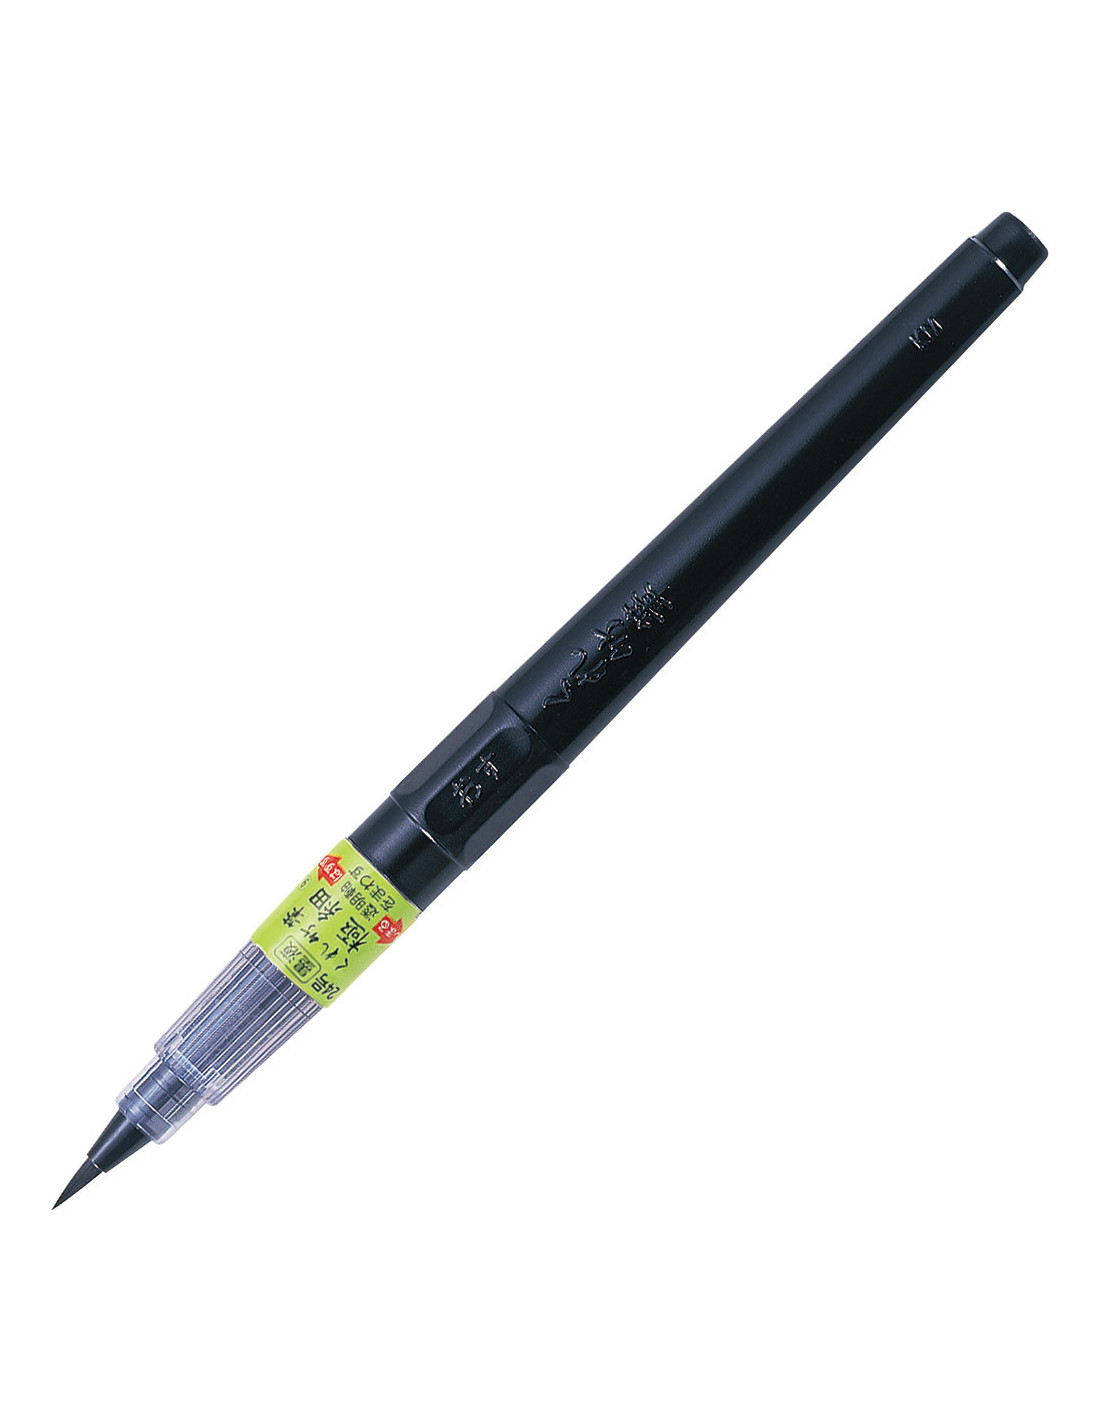 Kuretake Brush Pen No. 24 - Extra Fine